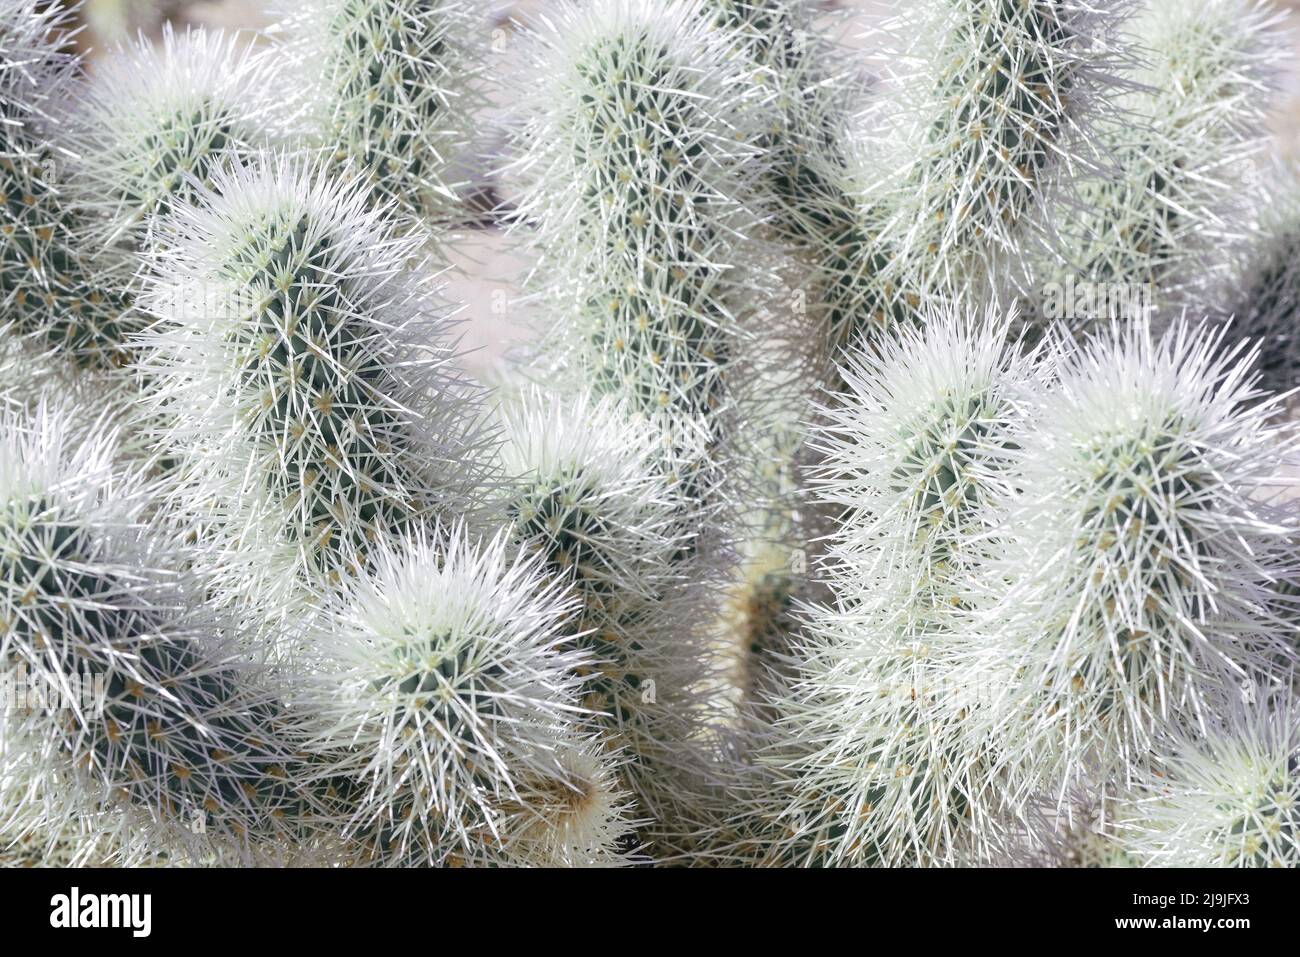 Gros plan sur le cactus Cholla unique, épique et à plusieurs branches, dans le parc national de Joshua Tree, dans le désert de Mojave, en Californie Banque D'Images